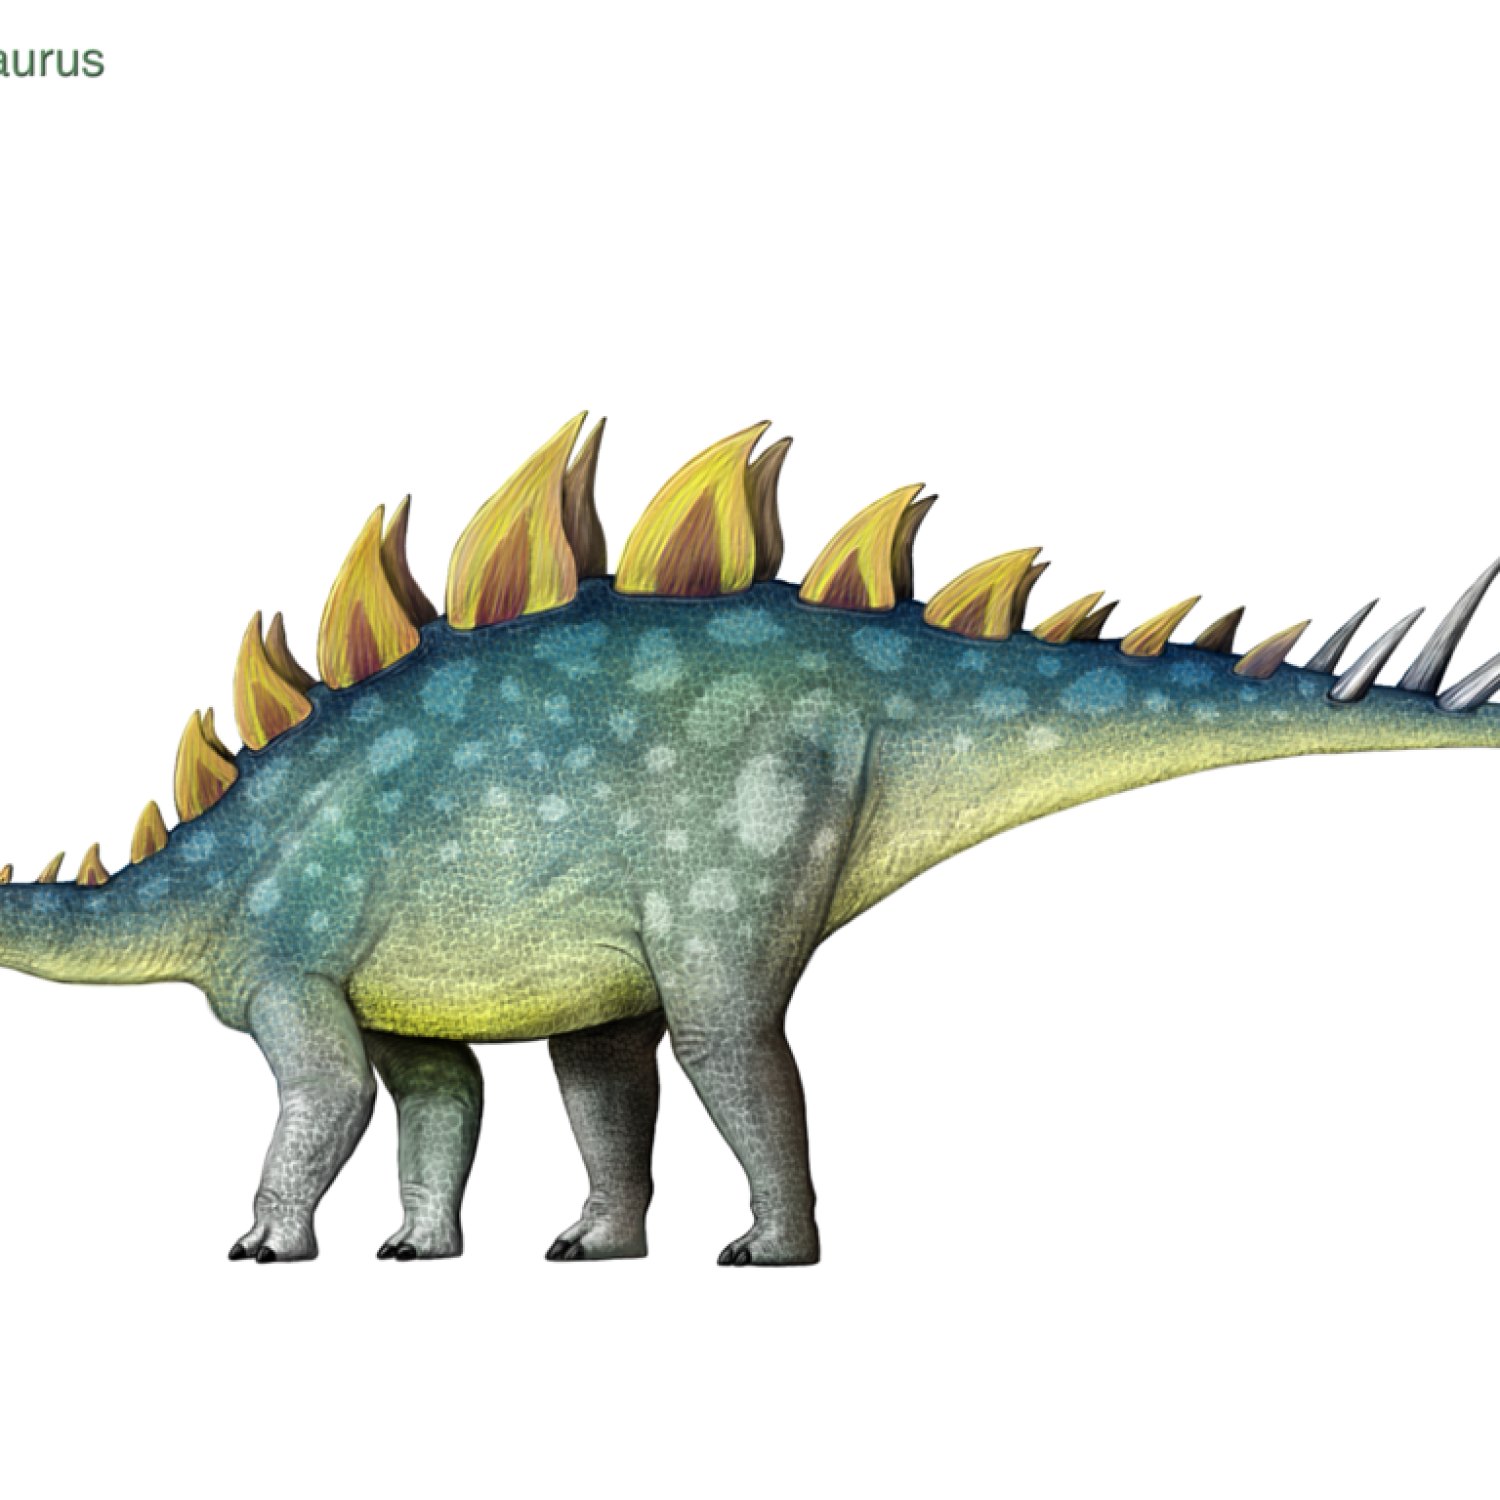 Loricatosaurus